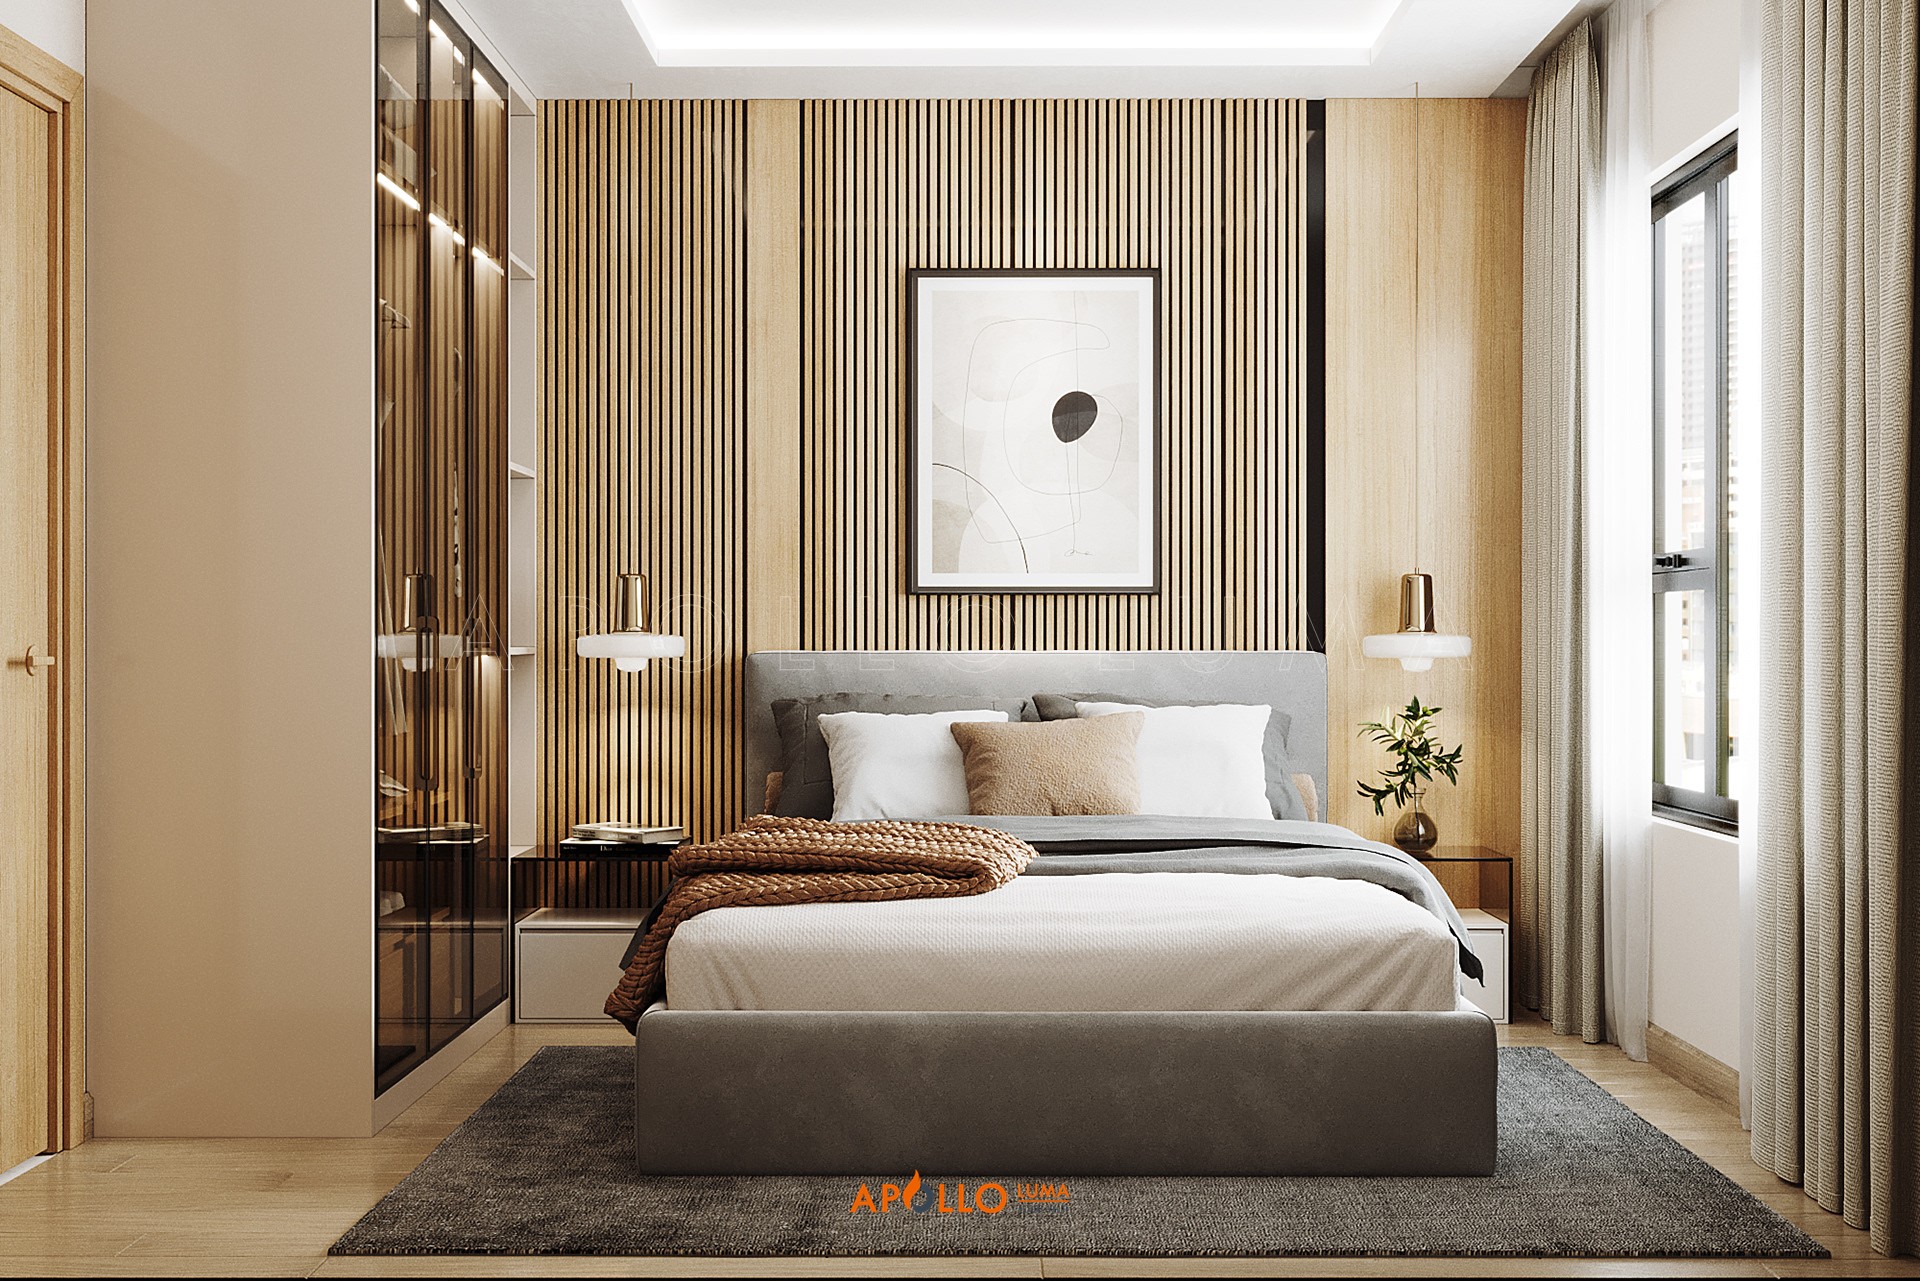 Thiết kế nội thất căn hộ 2 phòng ngủ (55m2) Tòa S1.01 Vinhomes Smart City Tây Mỗ